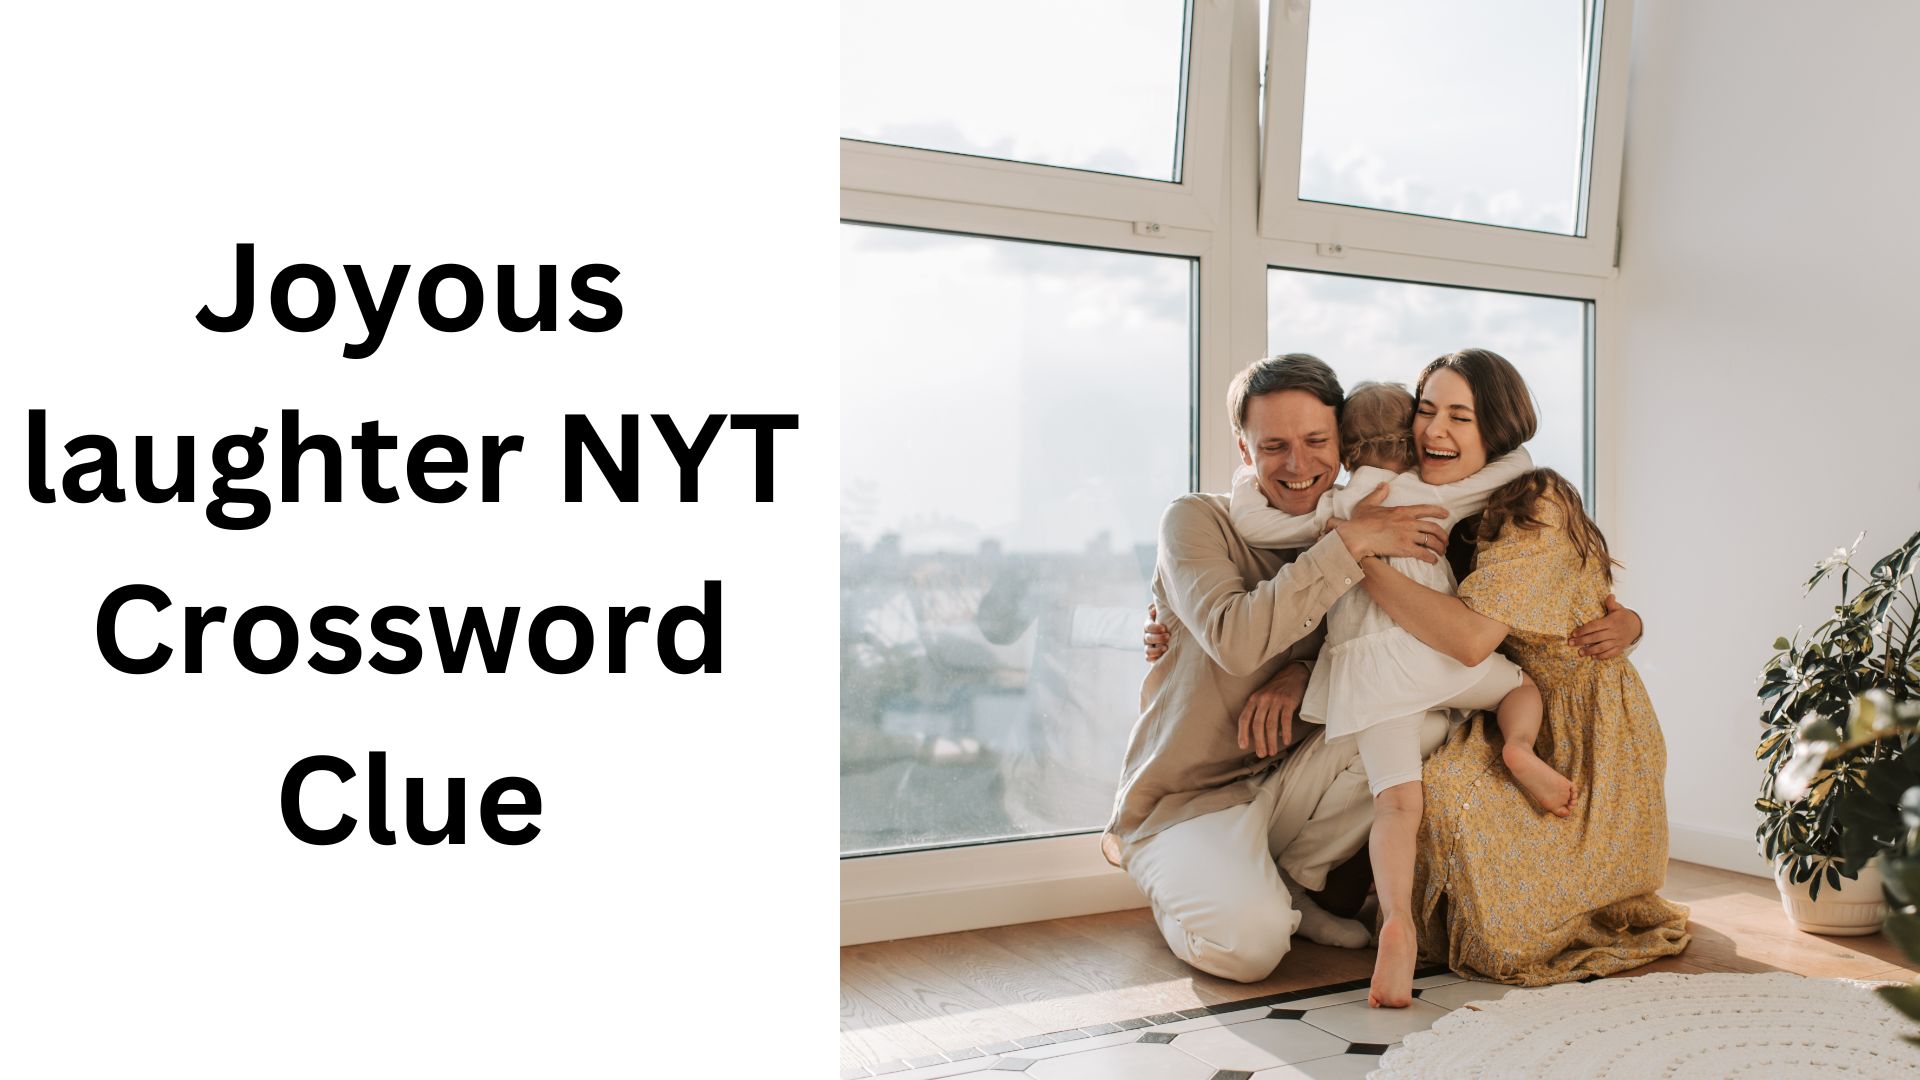 Joyous laughter NYT Crossword Clue 